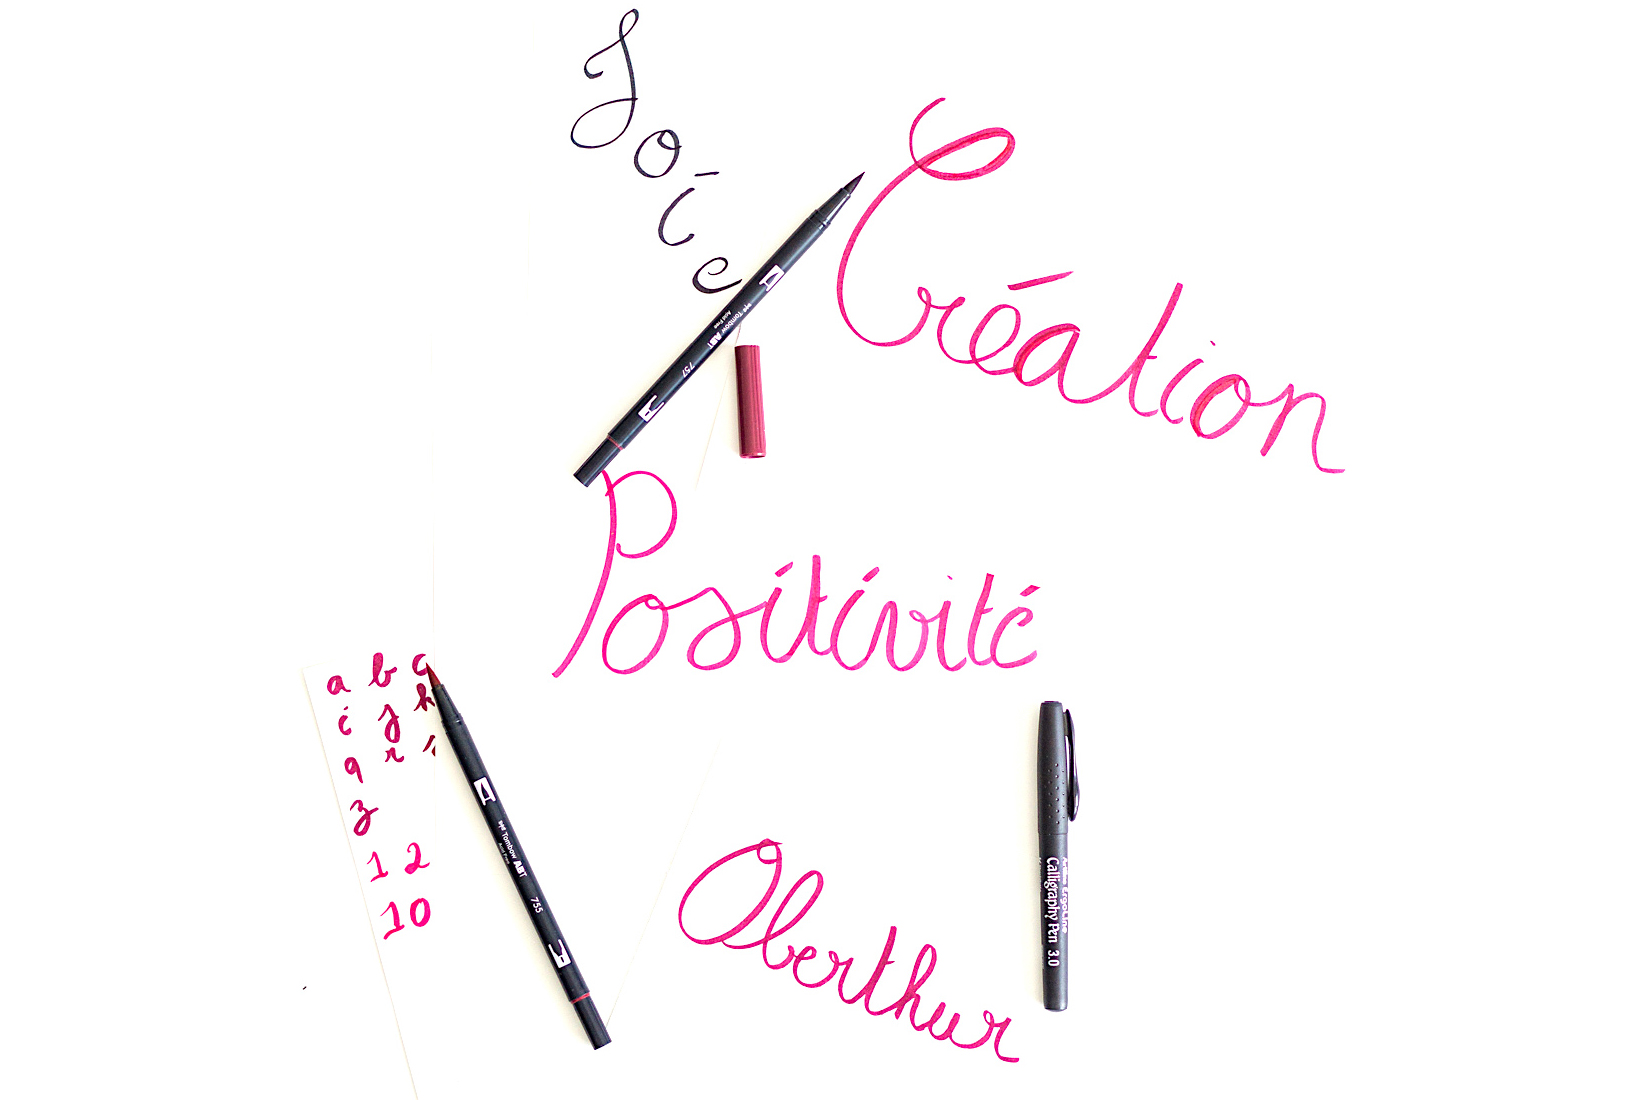 methode2-brushpen-rose-violet-noir-flatlay-calligraphie-hand lettering-tutoriel-oberthur-blog-rennes-lifestyle